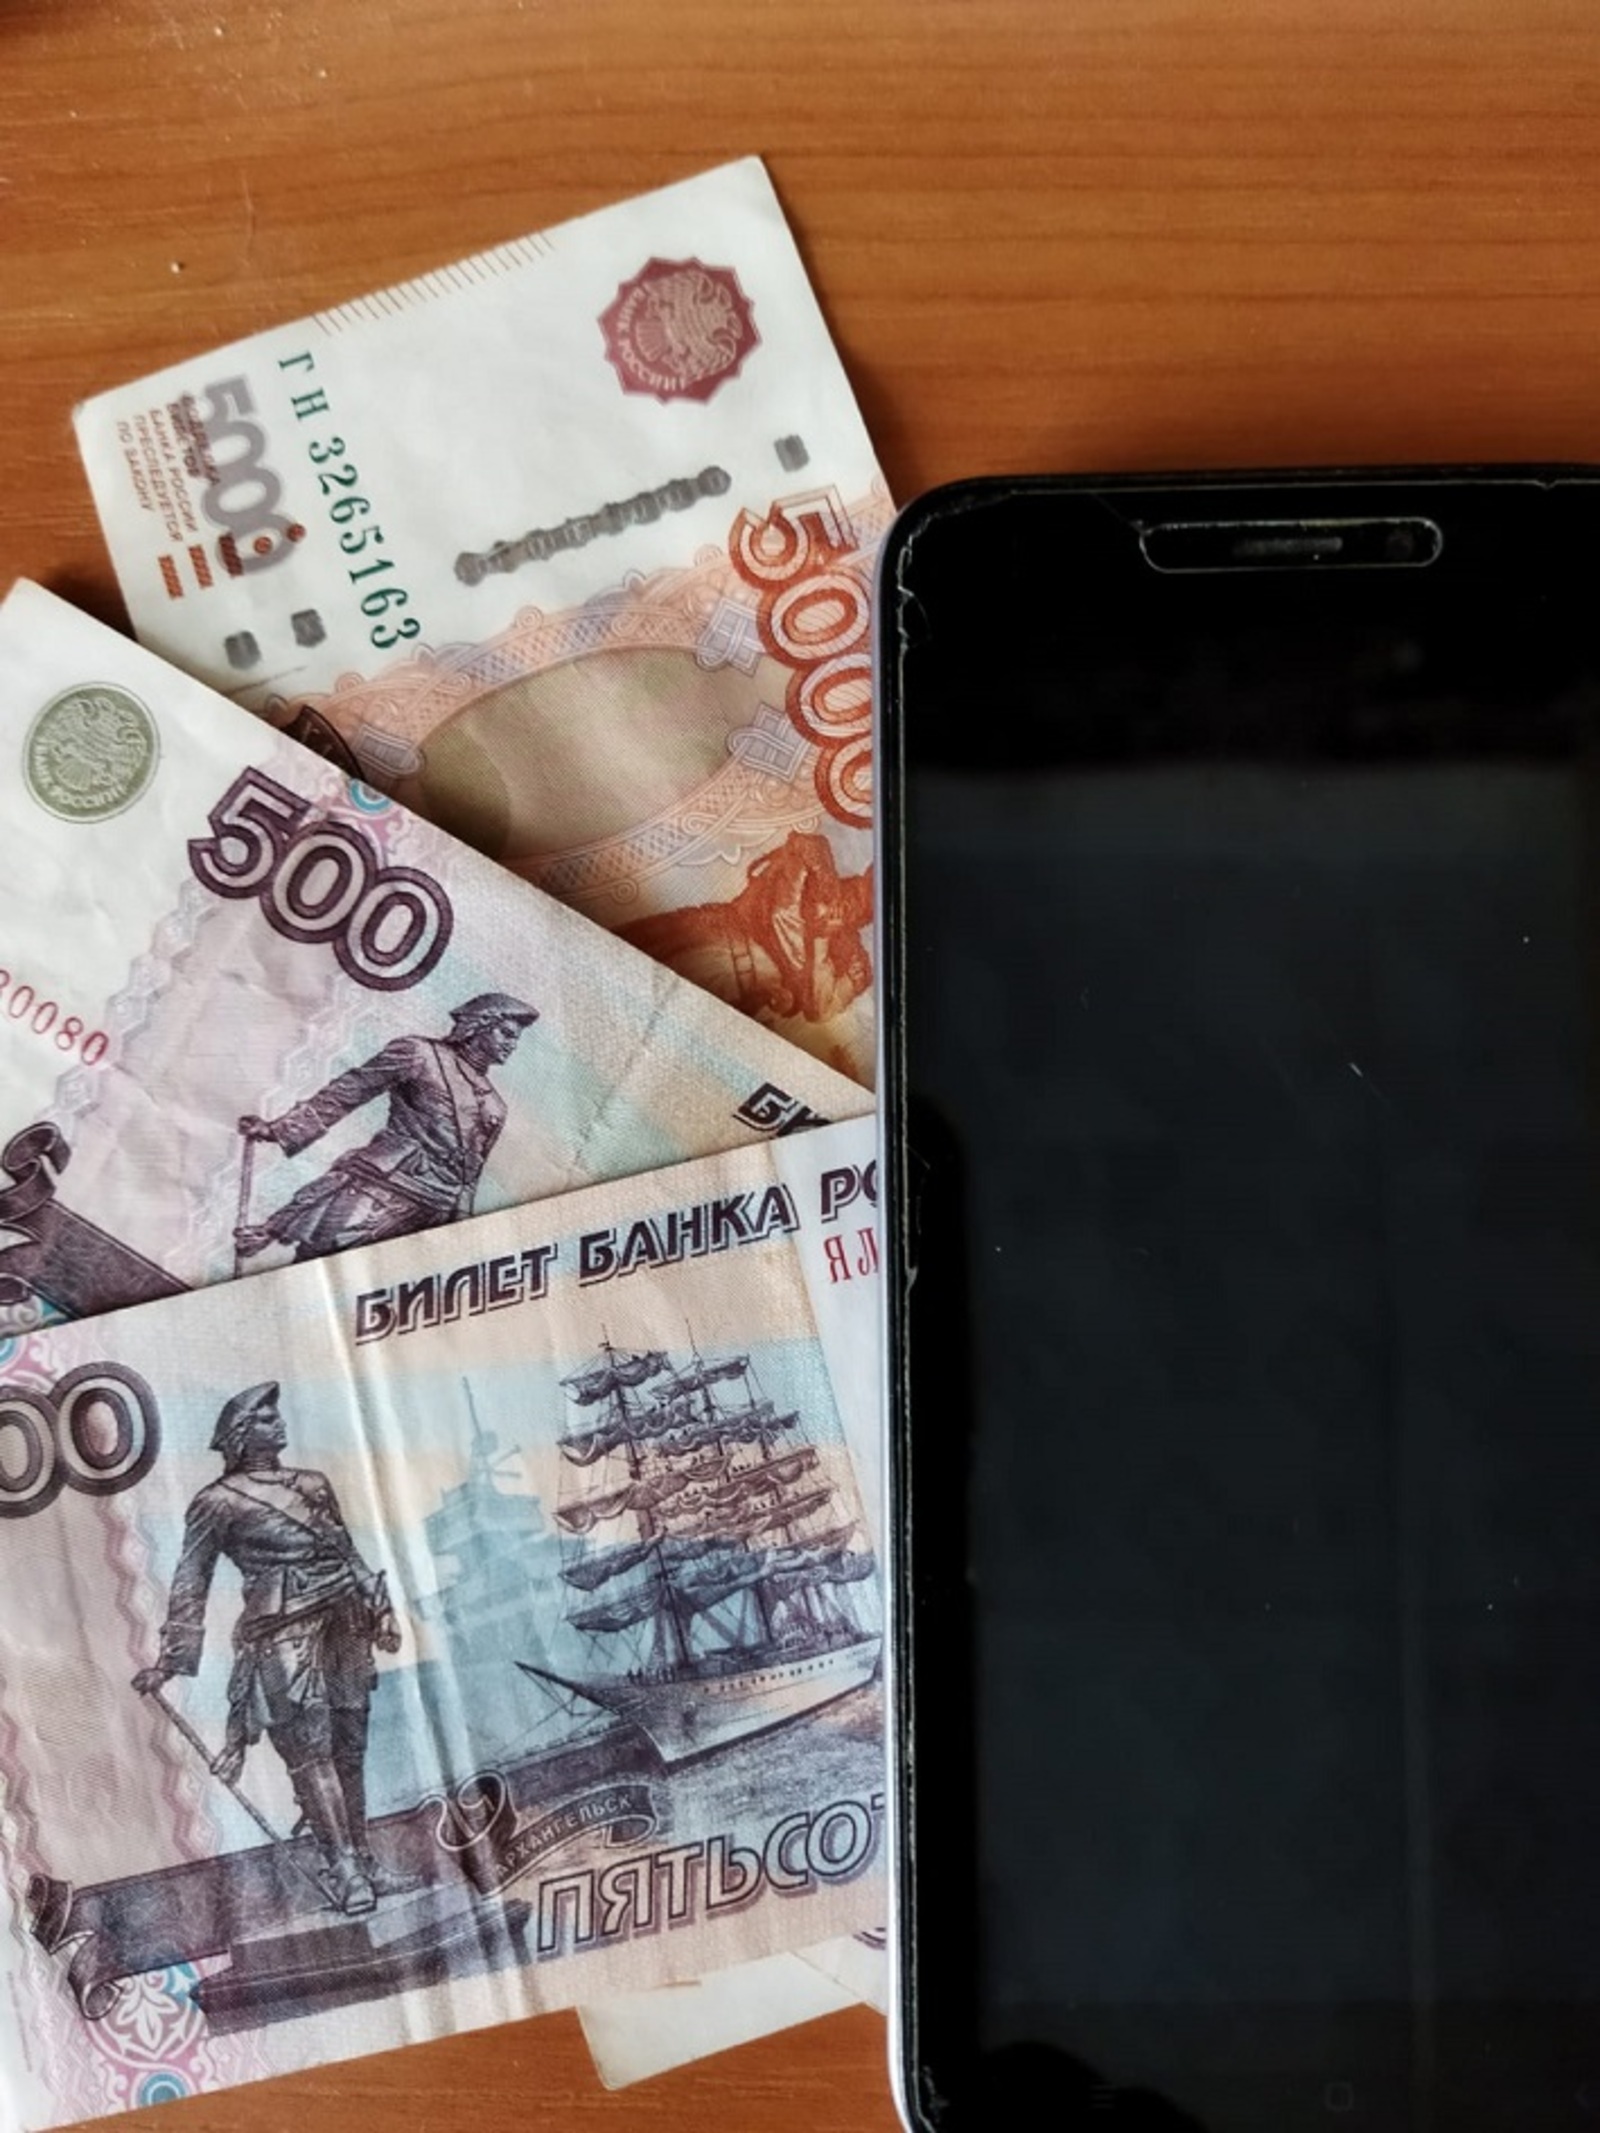 Жителей Башкирии массово обманывают, обещая доходы с инвестиций